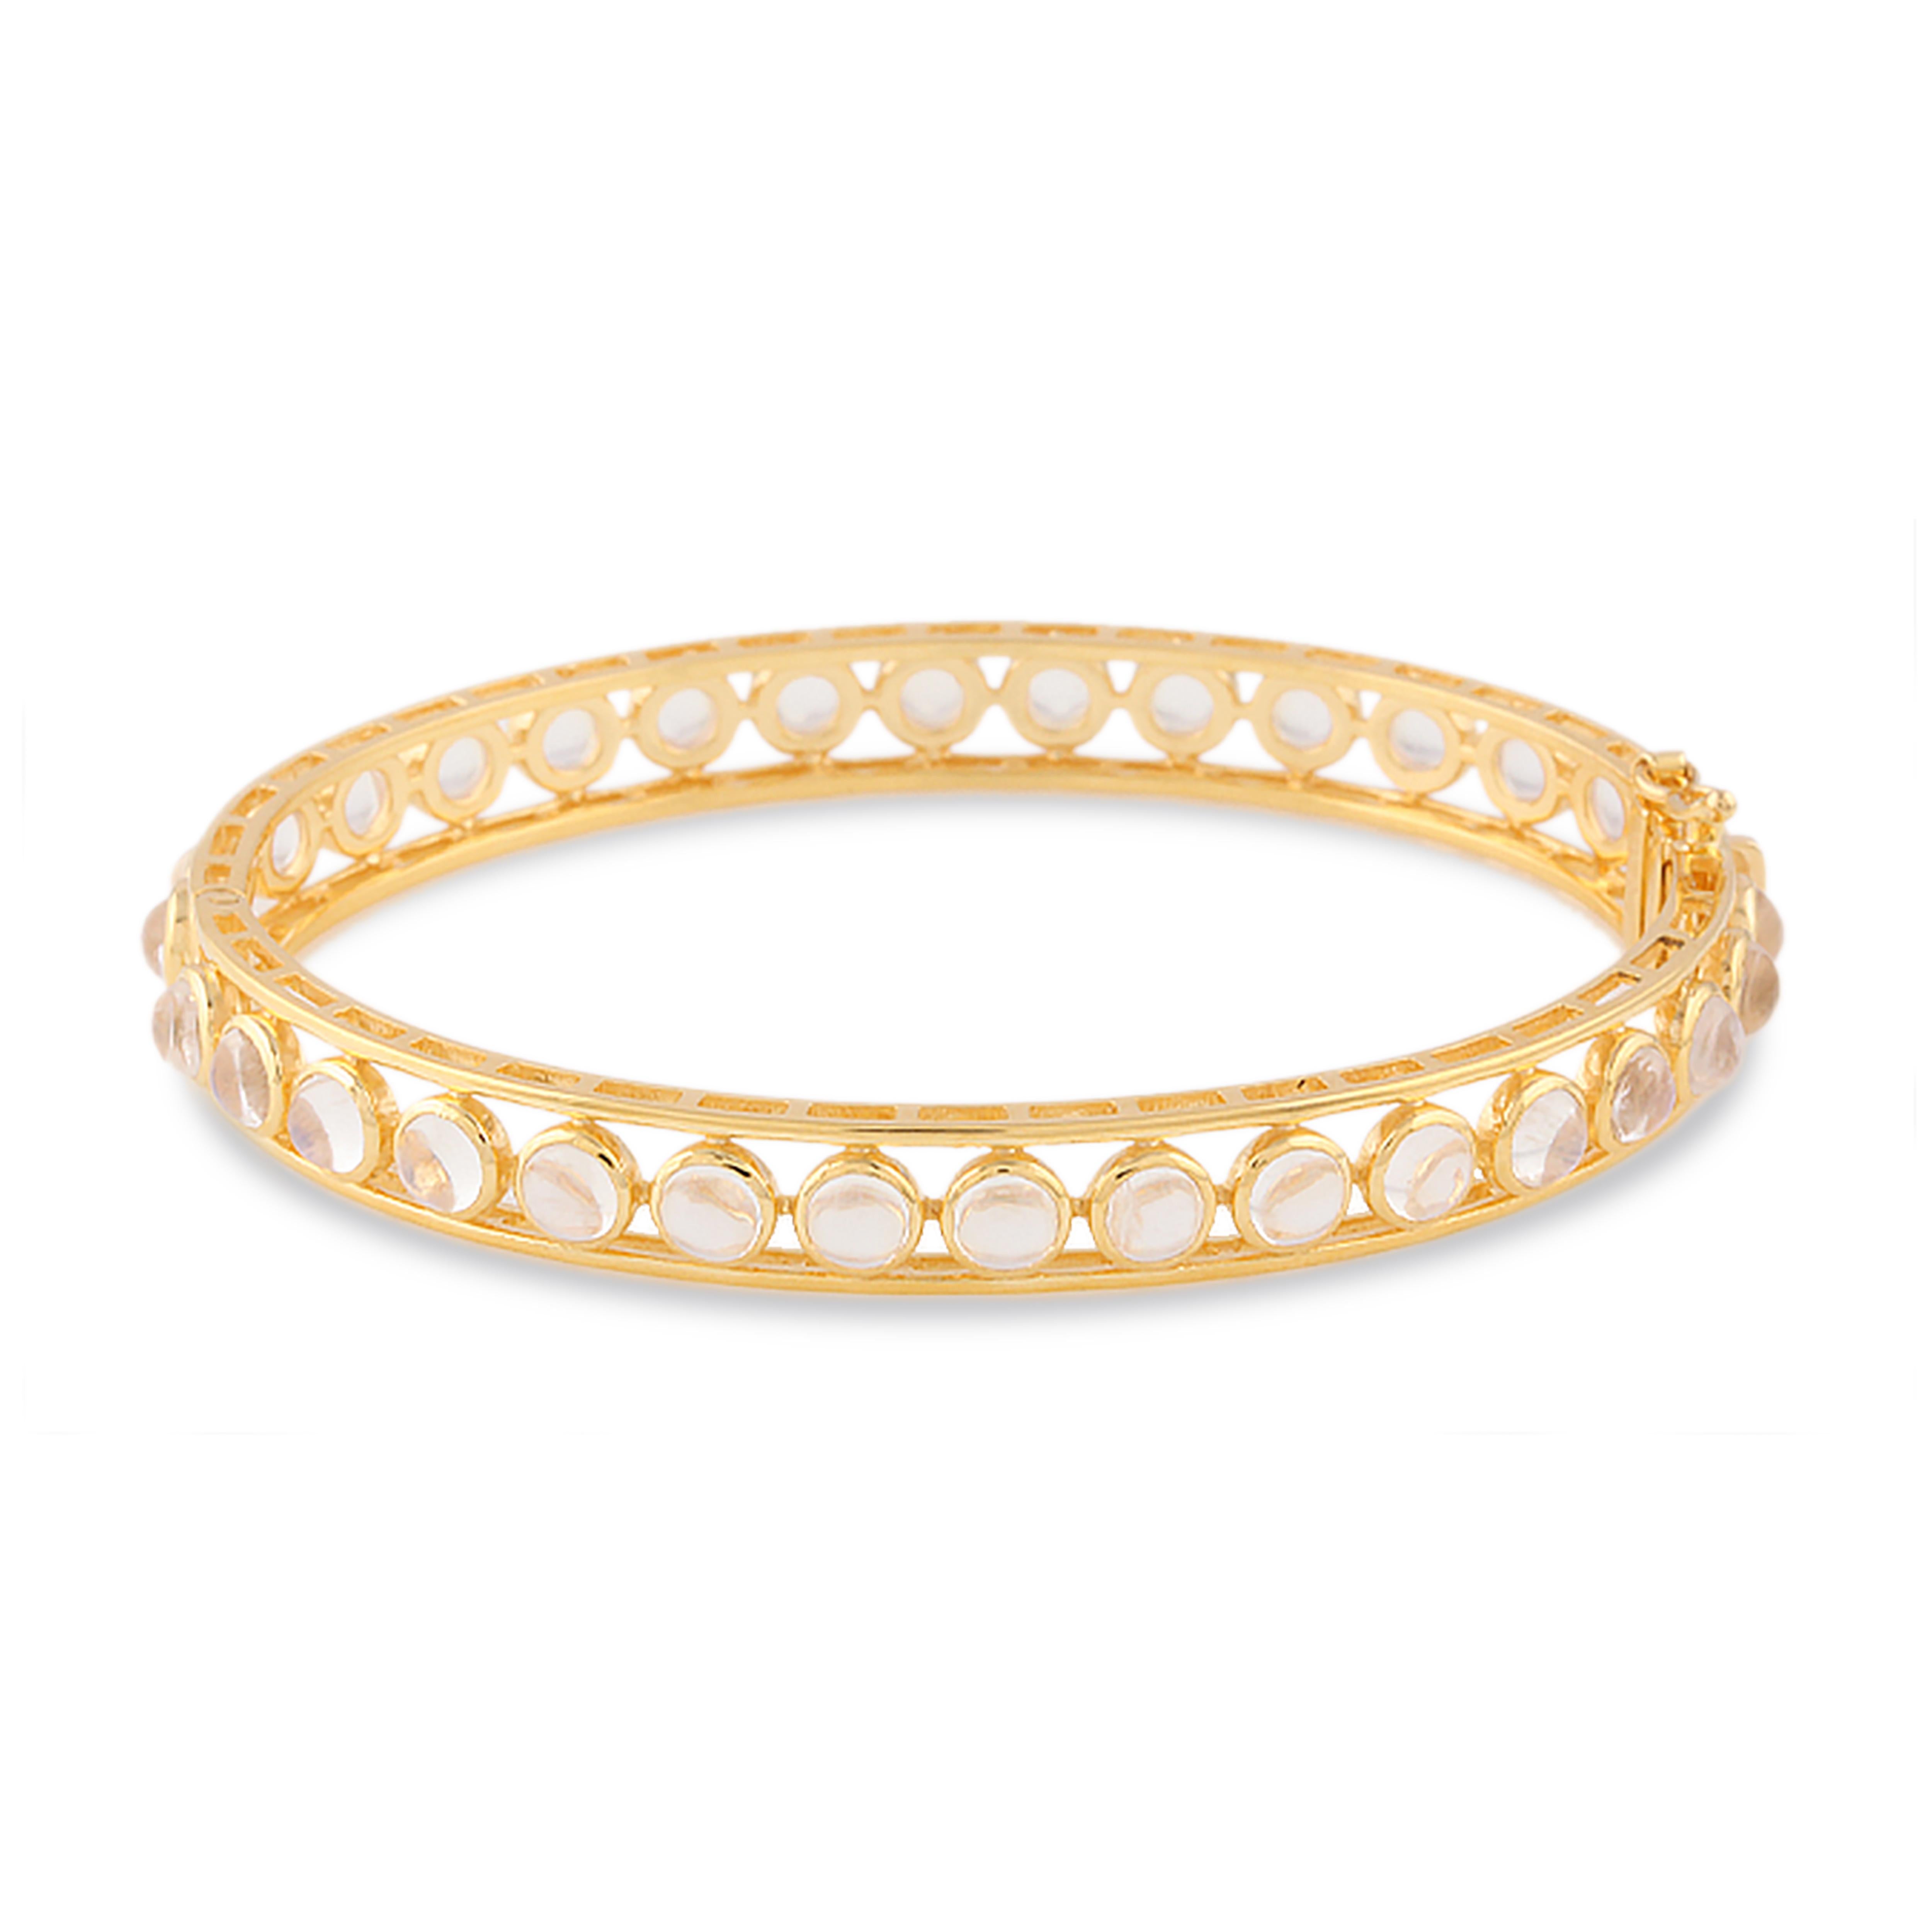 Le bracelet Tresor Rainbow Moonstone présente une pierre de lune arc-en-ciel de 8,00 cts en or jaune 18 carats. Les bracelets sont une ode à la beauté luxueuse et classique avec des diamants étincelants. Leur design contemporain et moderne leur